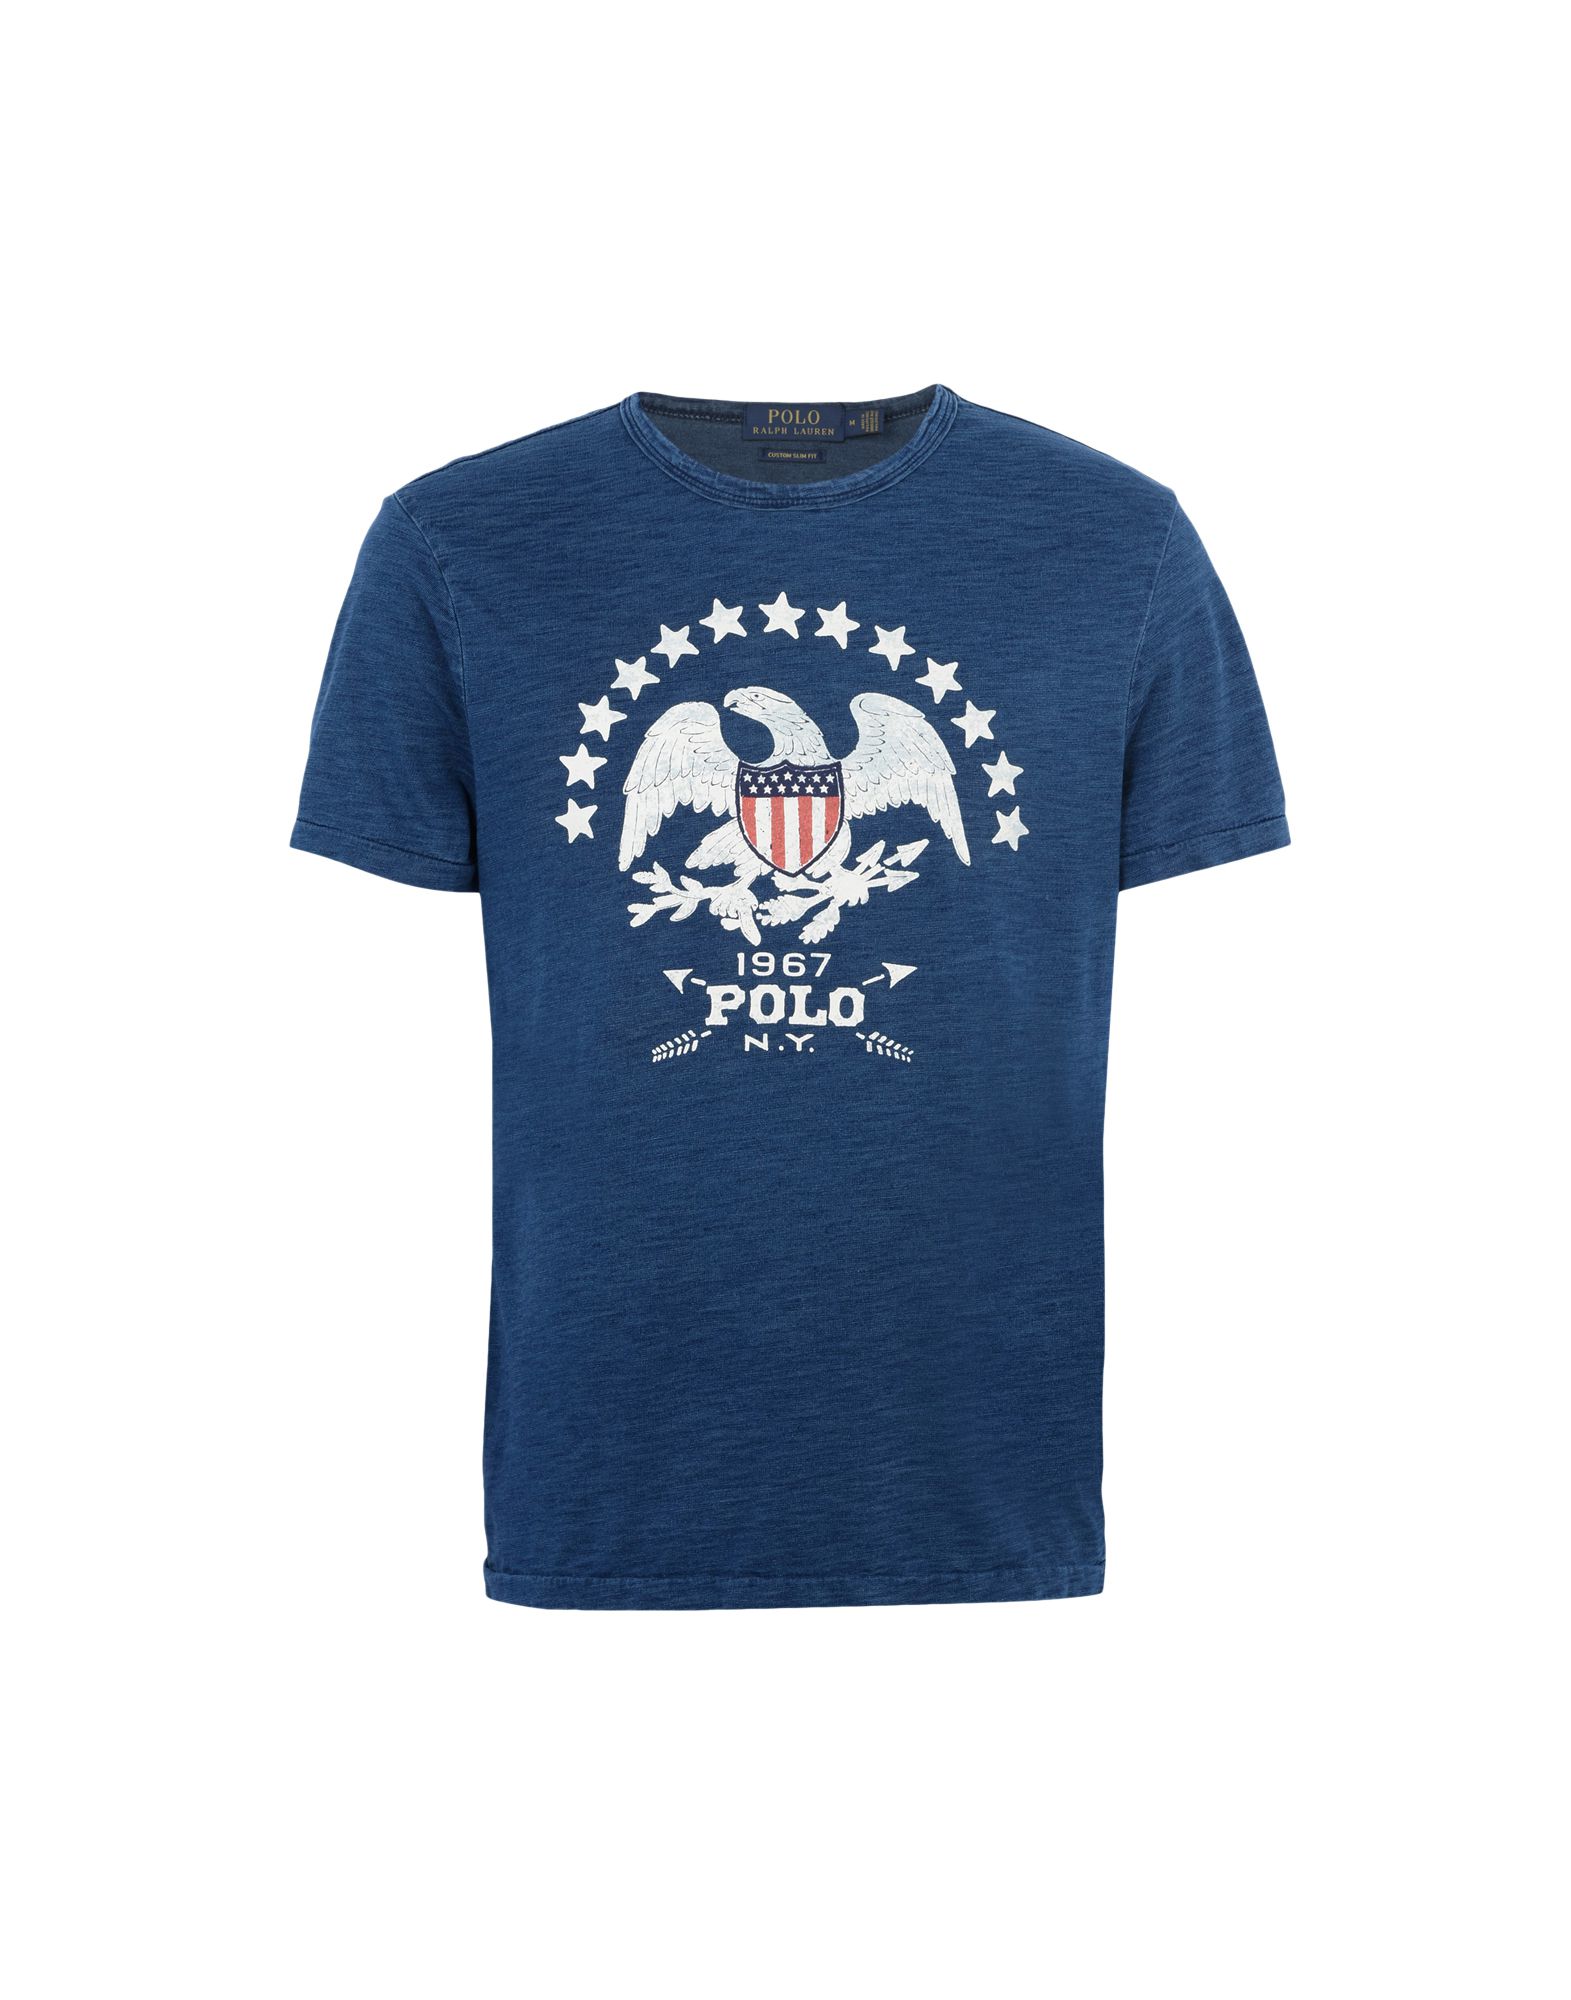 《送料無料》POLO RALPH LAUREN メンズ T シャツ ブルーグレー S コットン 100% The Iconic American flag T Shirt